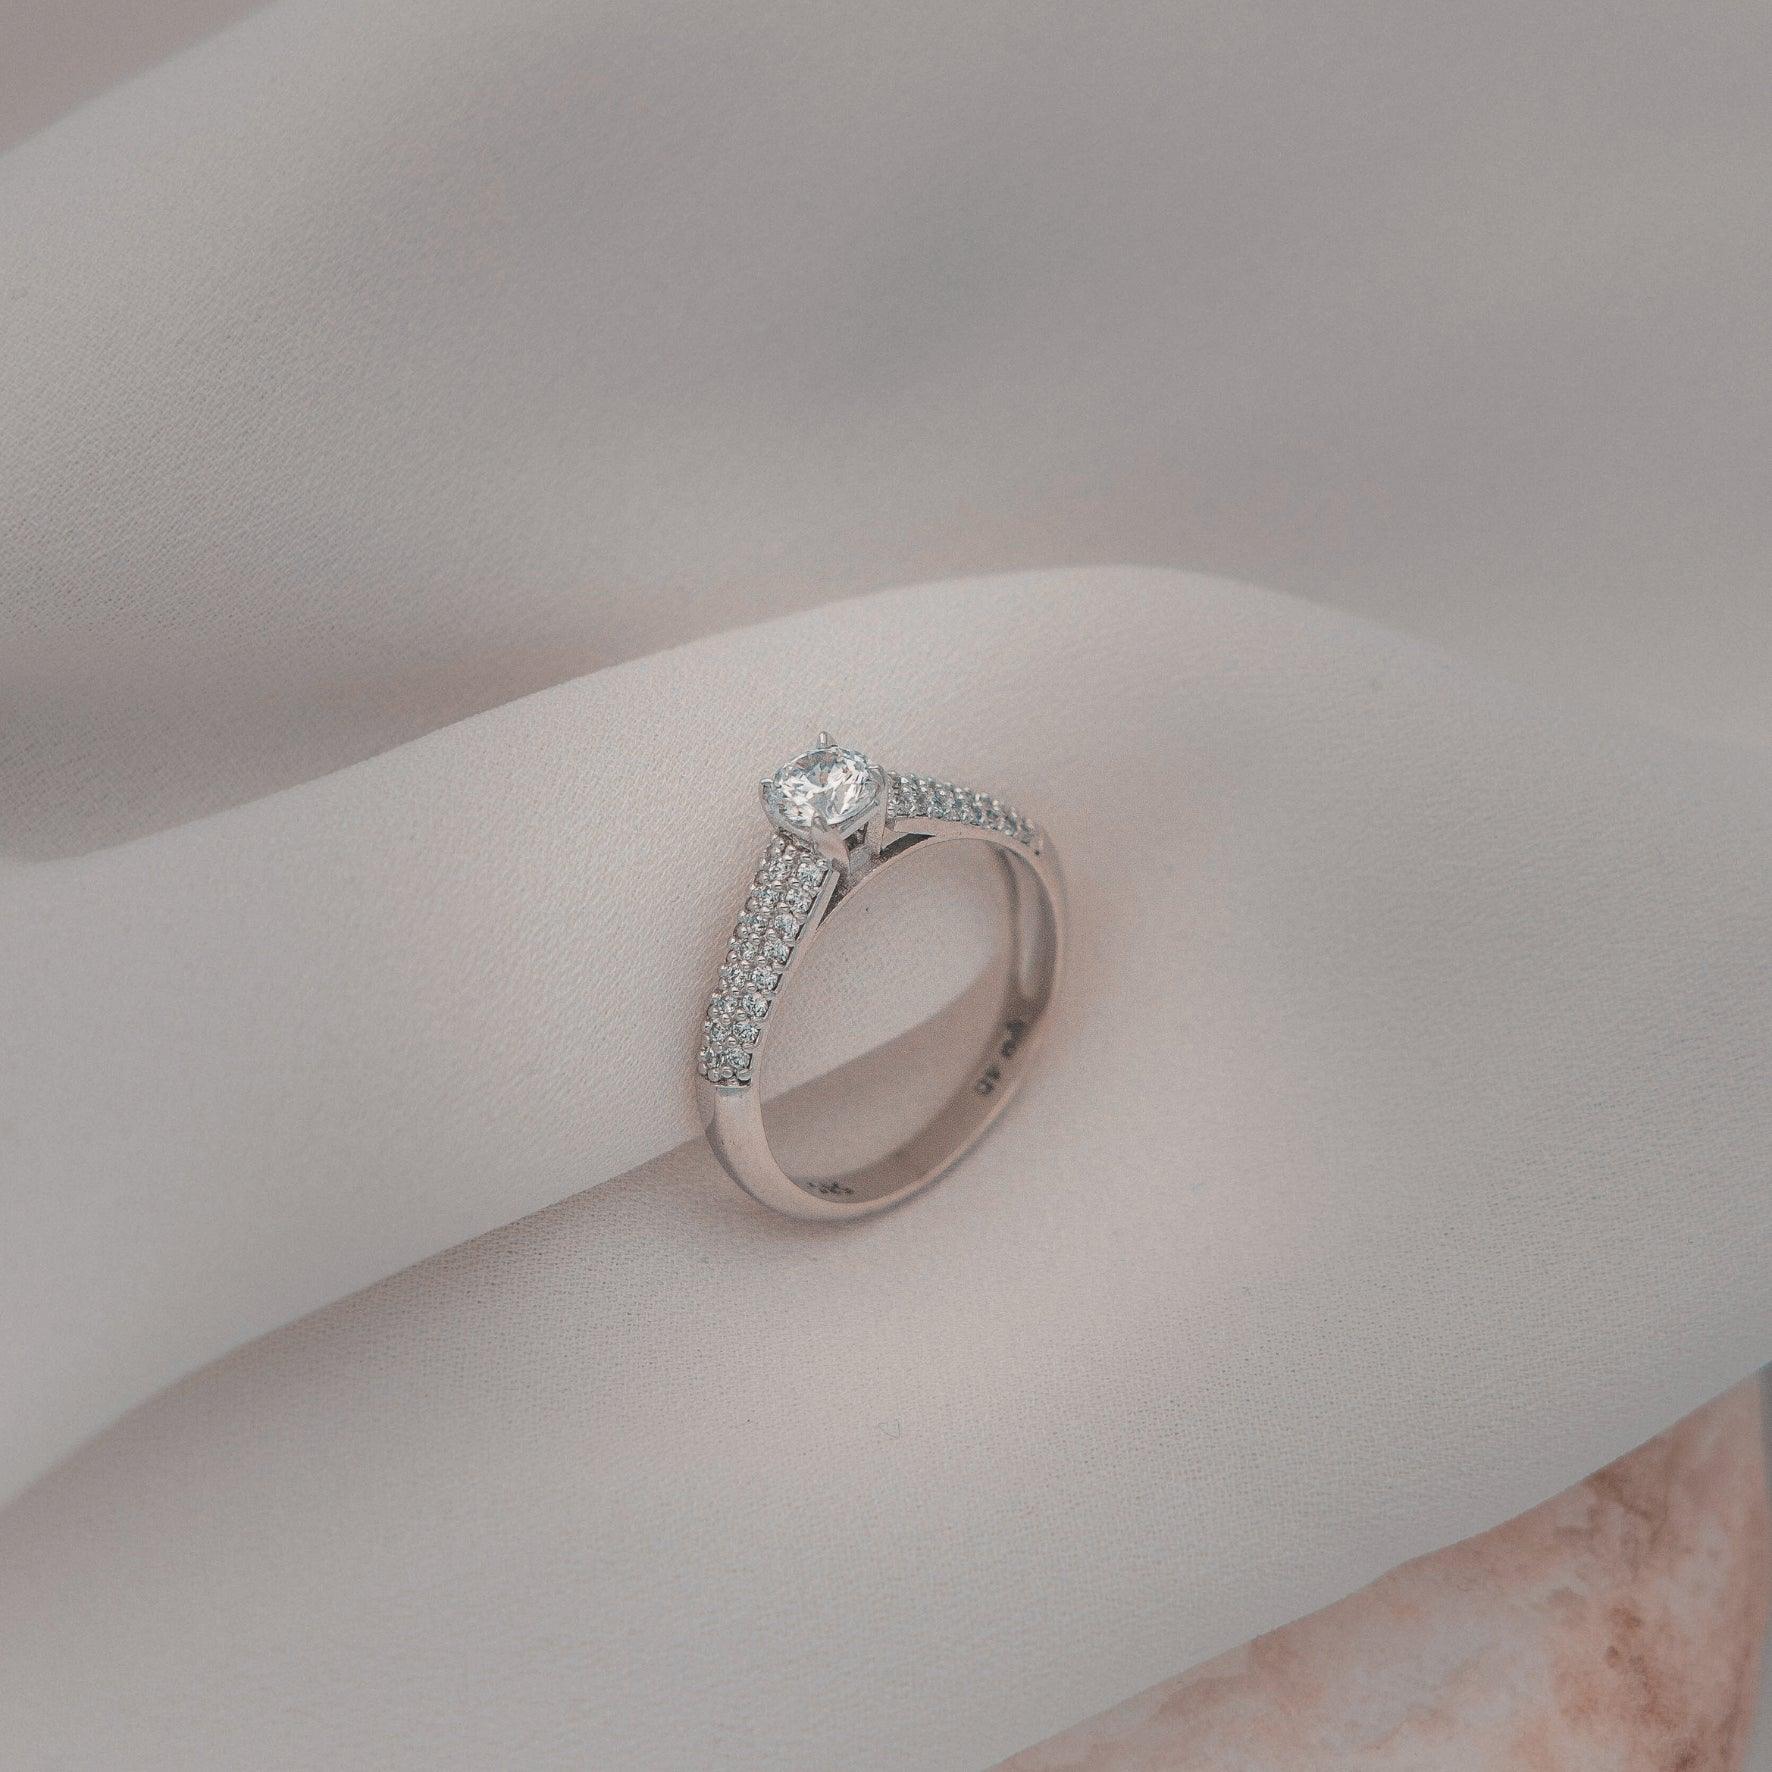 Μονόπετρο δαχτυλίδι με κεντρικό διαμάντι round cut και πλαϊνές πέτρες από μικρότερα διαμάντια, κατασκευασμένο από λευκόχρυσο. 